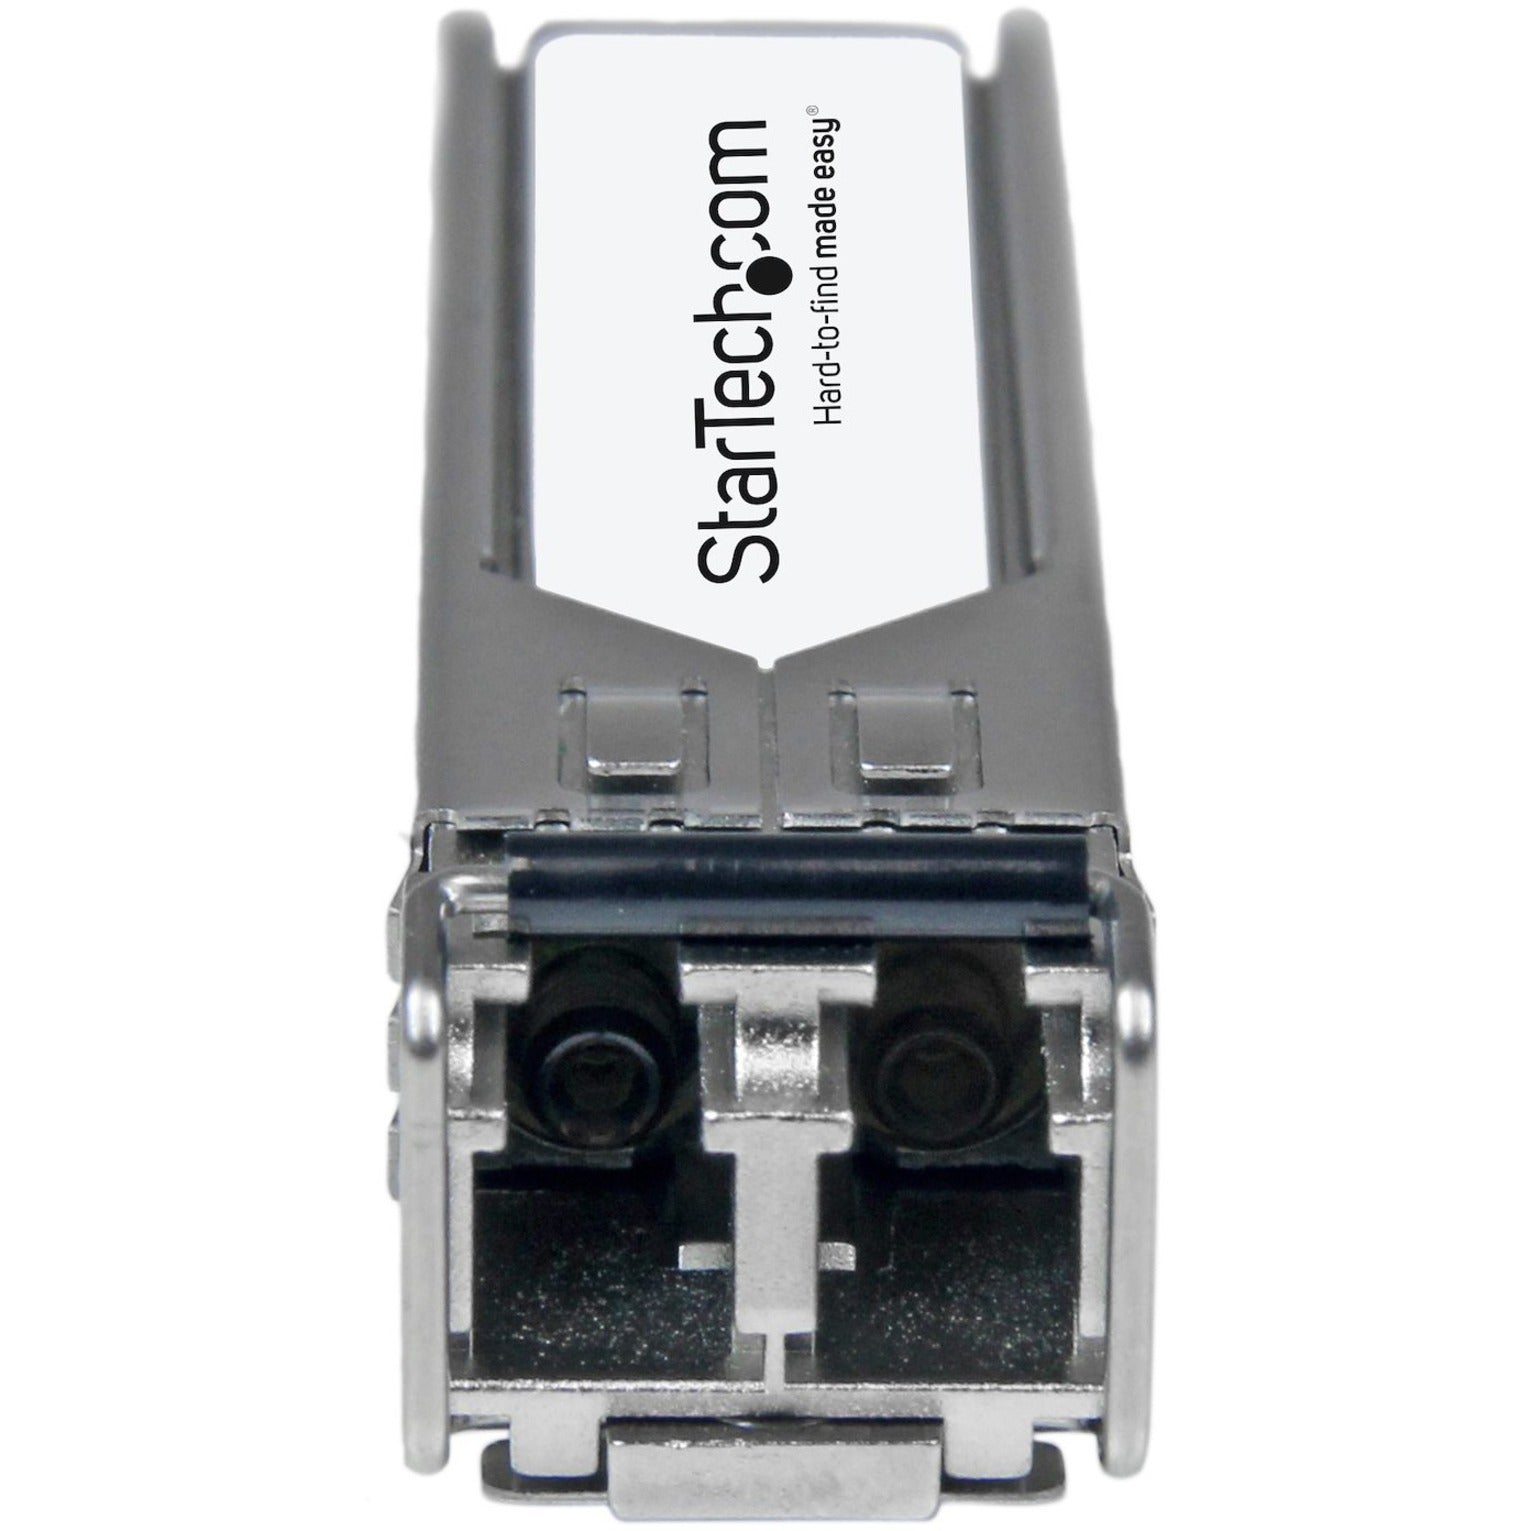 Module de transceiver compatible StarTech.com HP J9151A-ST - Module transceiver SFP+ Compatible HP J9151A - 10GBASE-LR Fibre 10 Gigabits 10 km (62 mi) LC monomode avec DDM